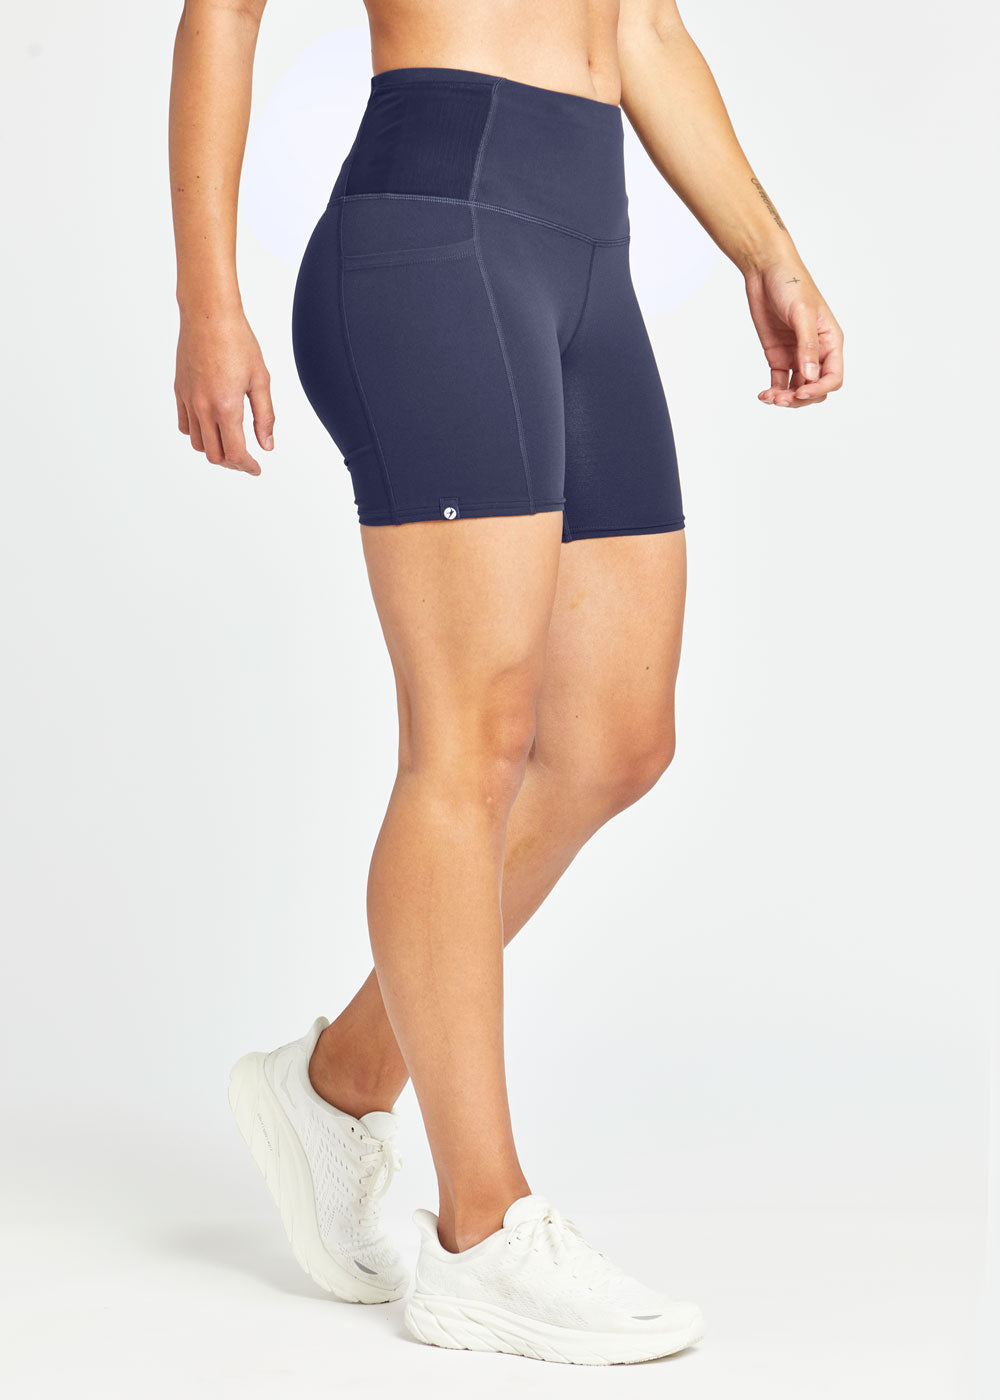 Lululemon 7 Inch Shorts Womens Size 8